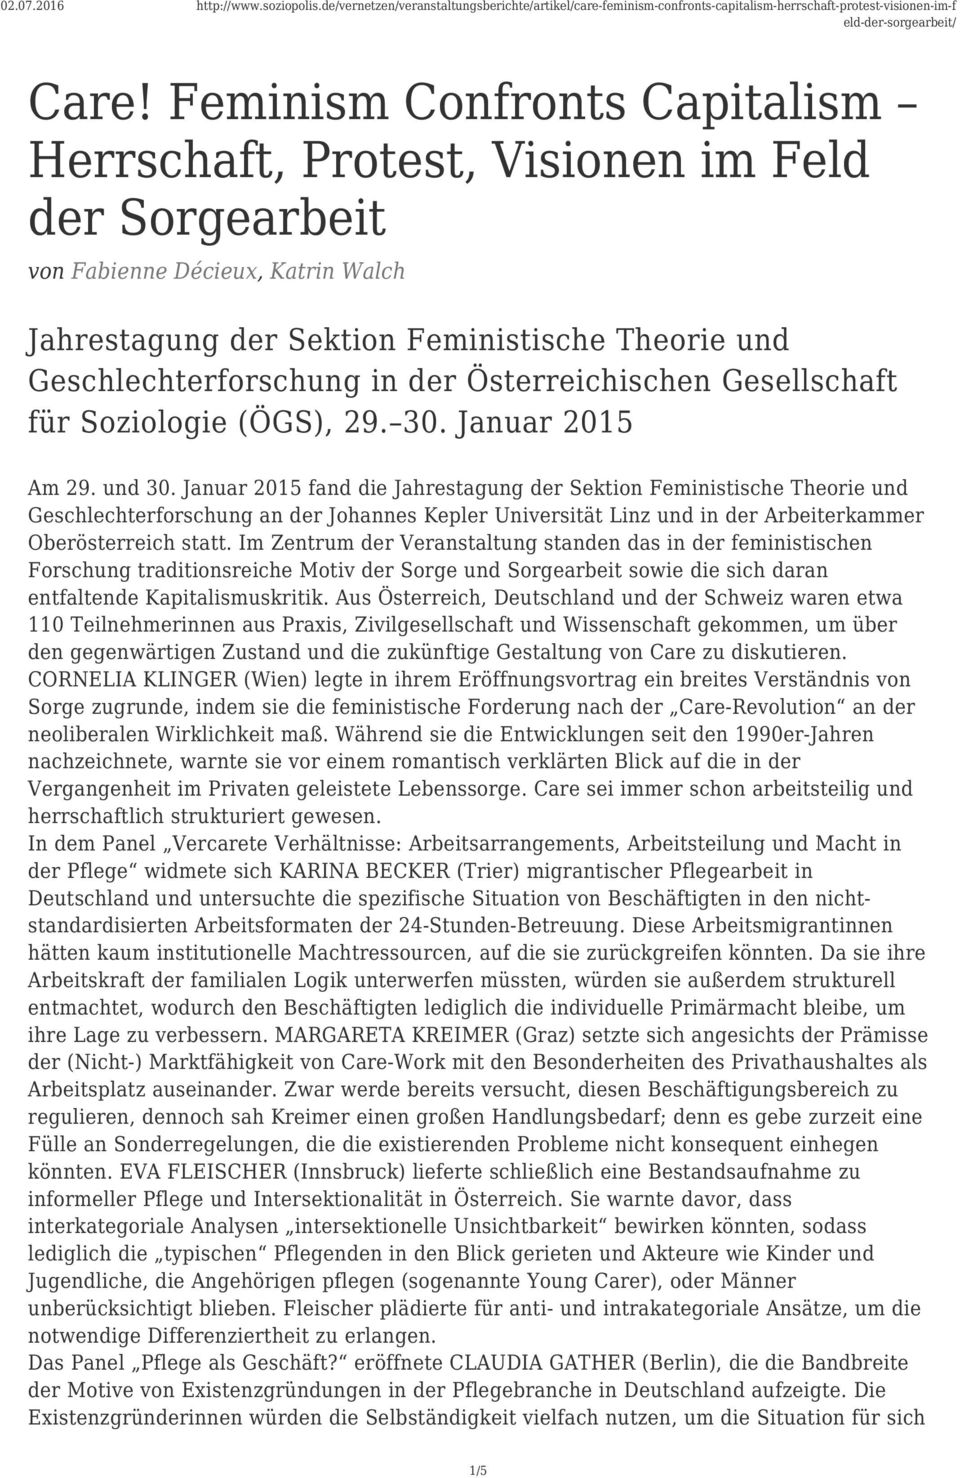 Januar 2015 fand die Jahrestagung der Sektion Feministische Theorie und Geschlechterforschung an der Johannes Kepler Universität Linz und in der Arbeiterkammer Oberösterreich statt.